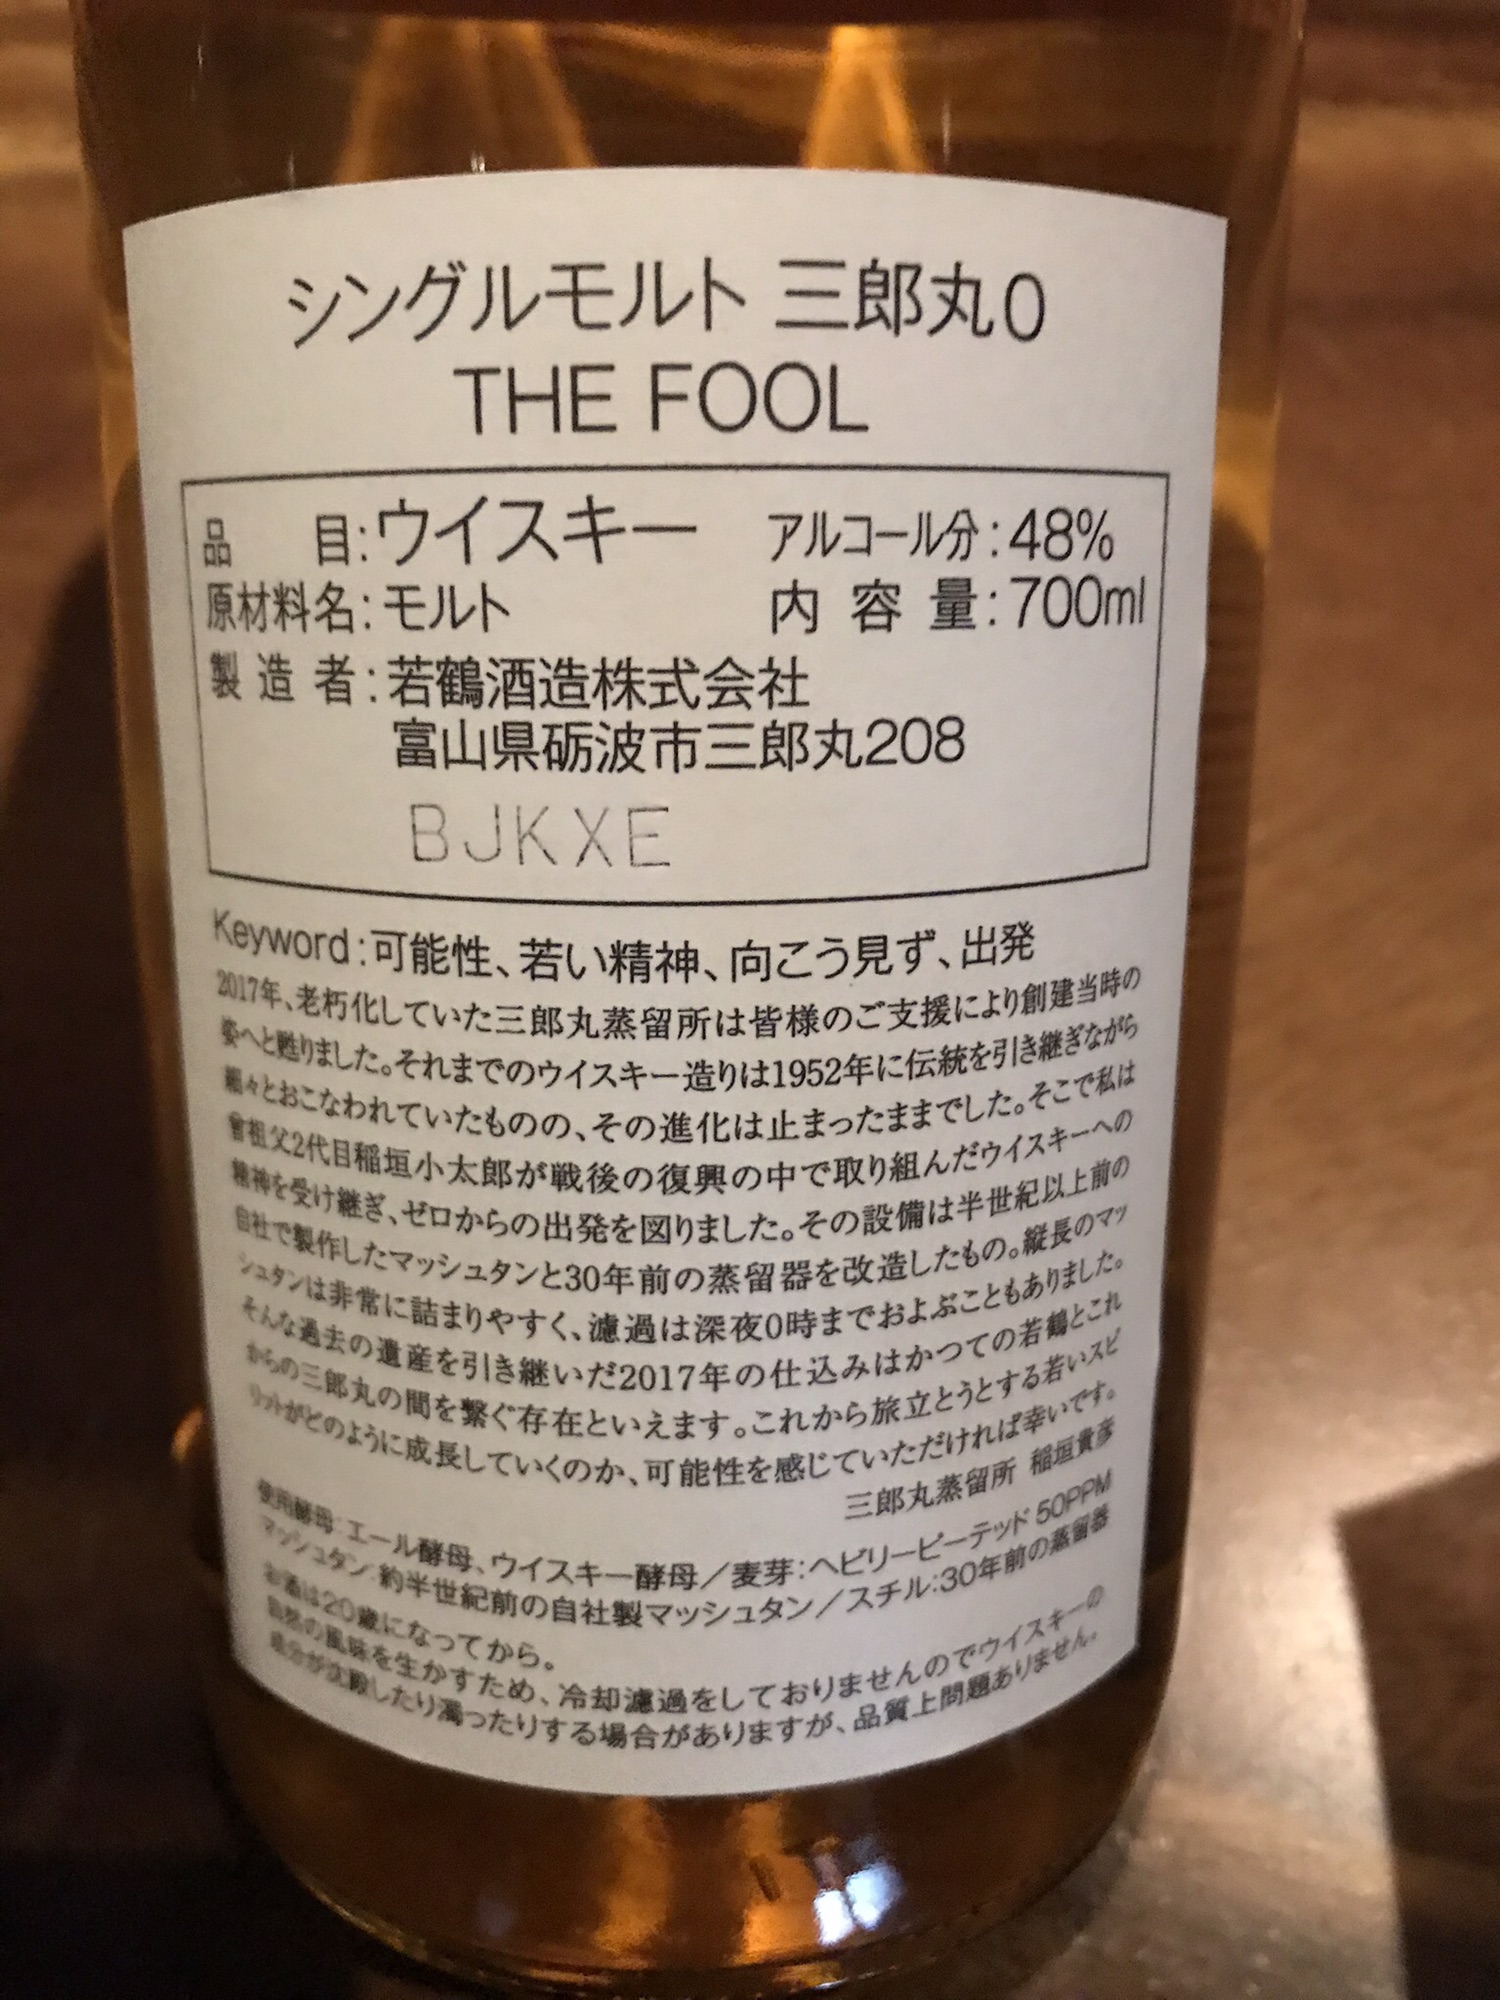 シングルモルト 「三郎丸0 THE FOOL」 - 飲料/酒